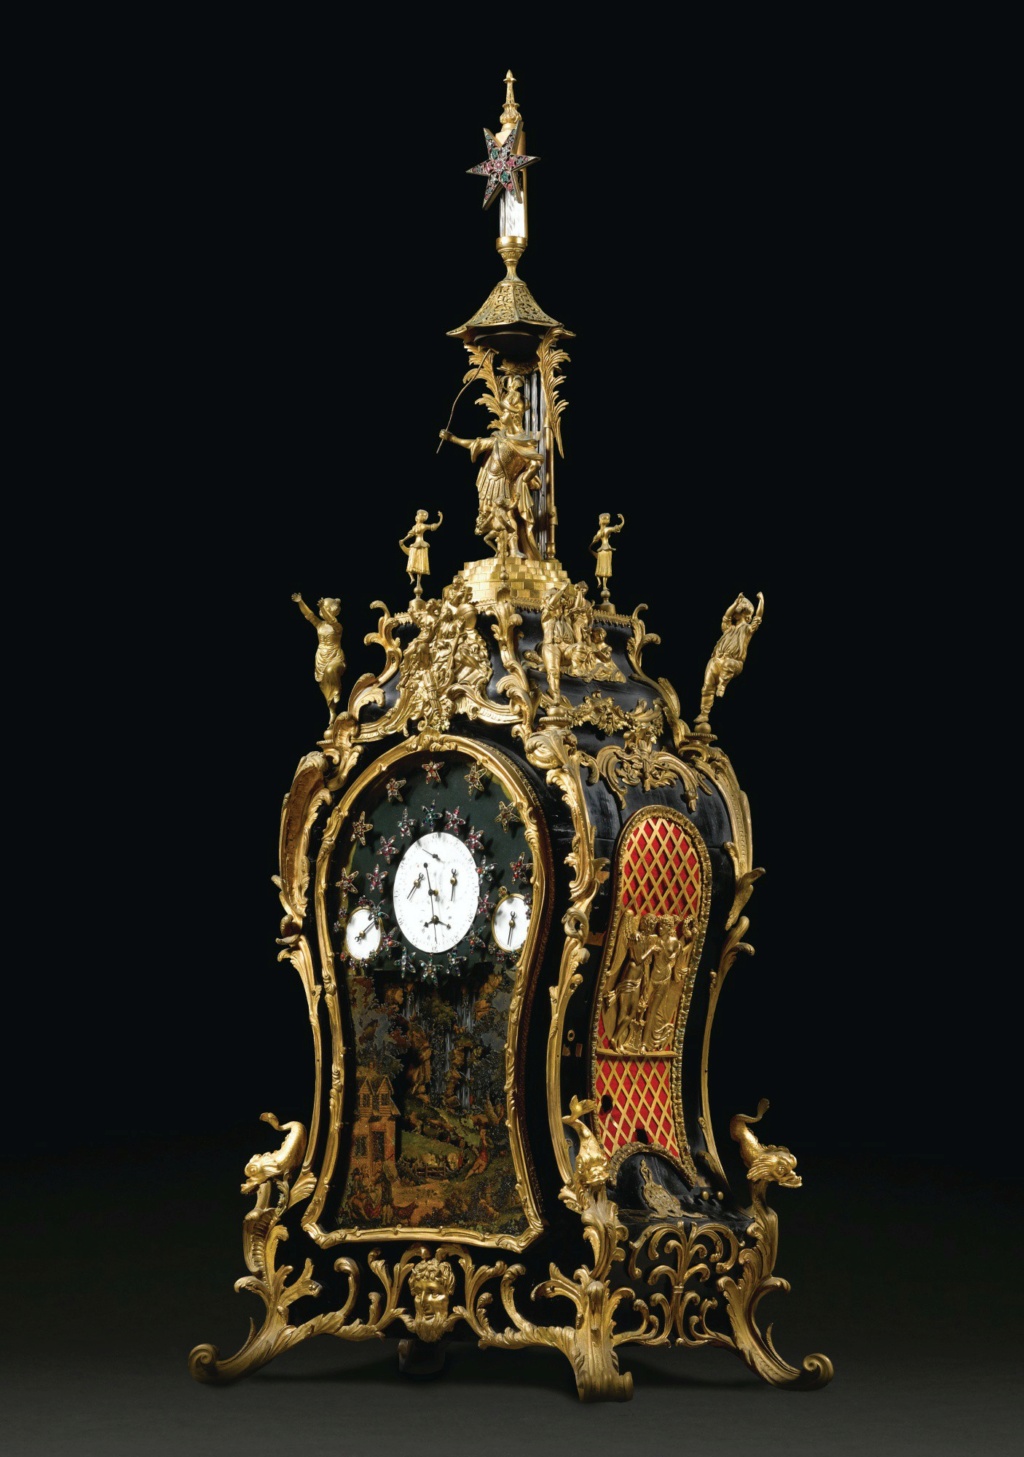 pendules - Horloges et pendules du XVIIIe siècle - Page 3 L2030310